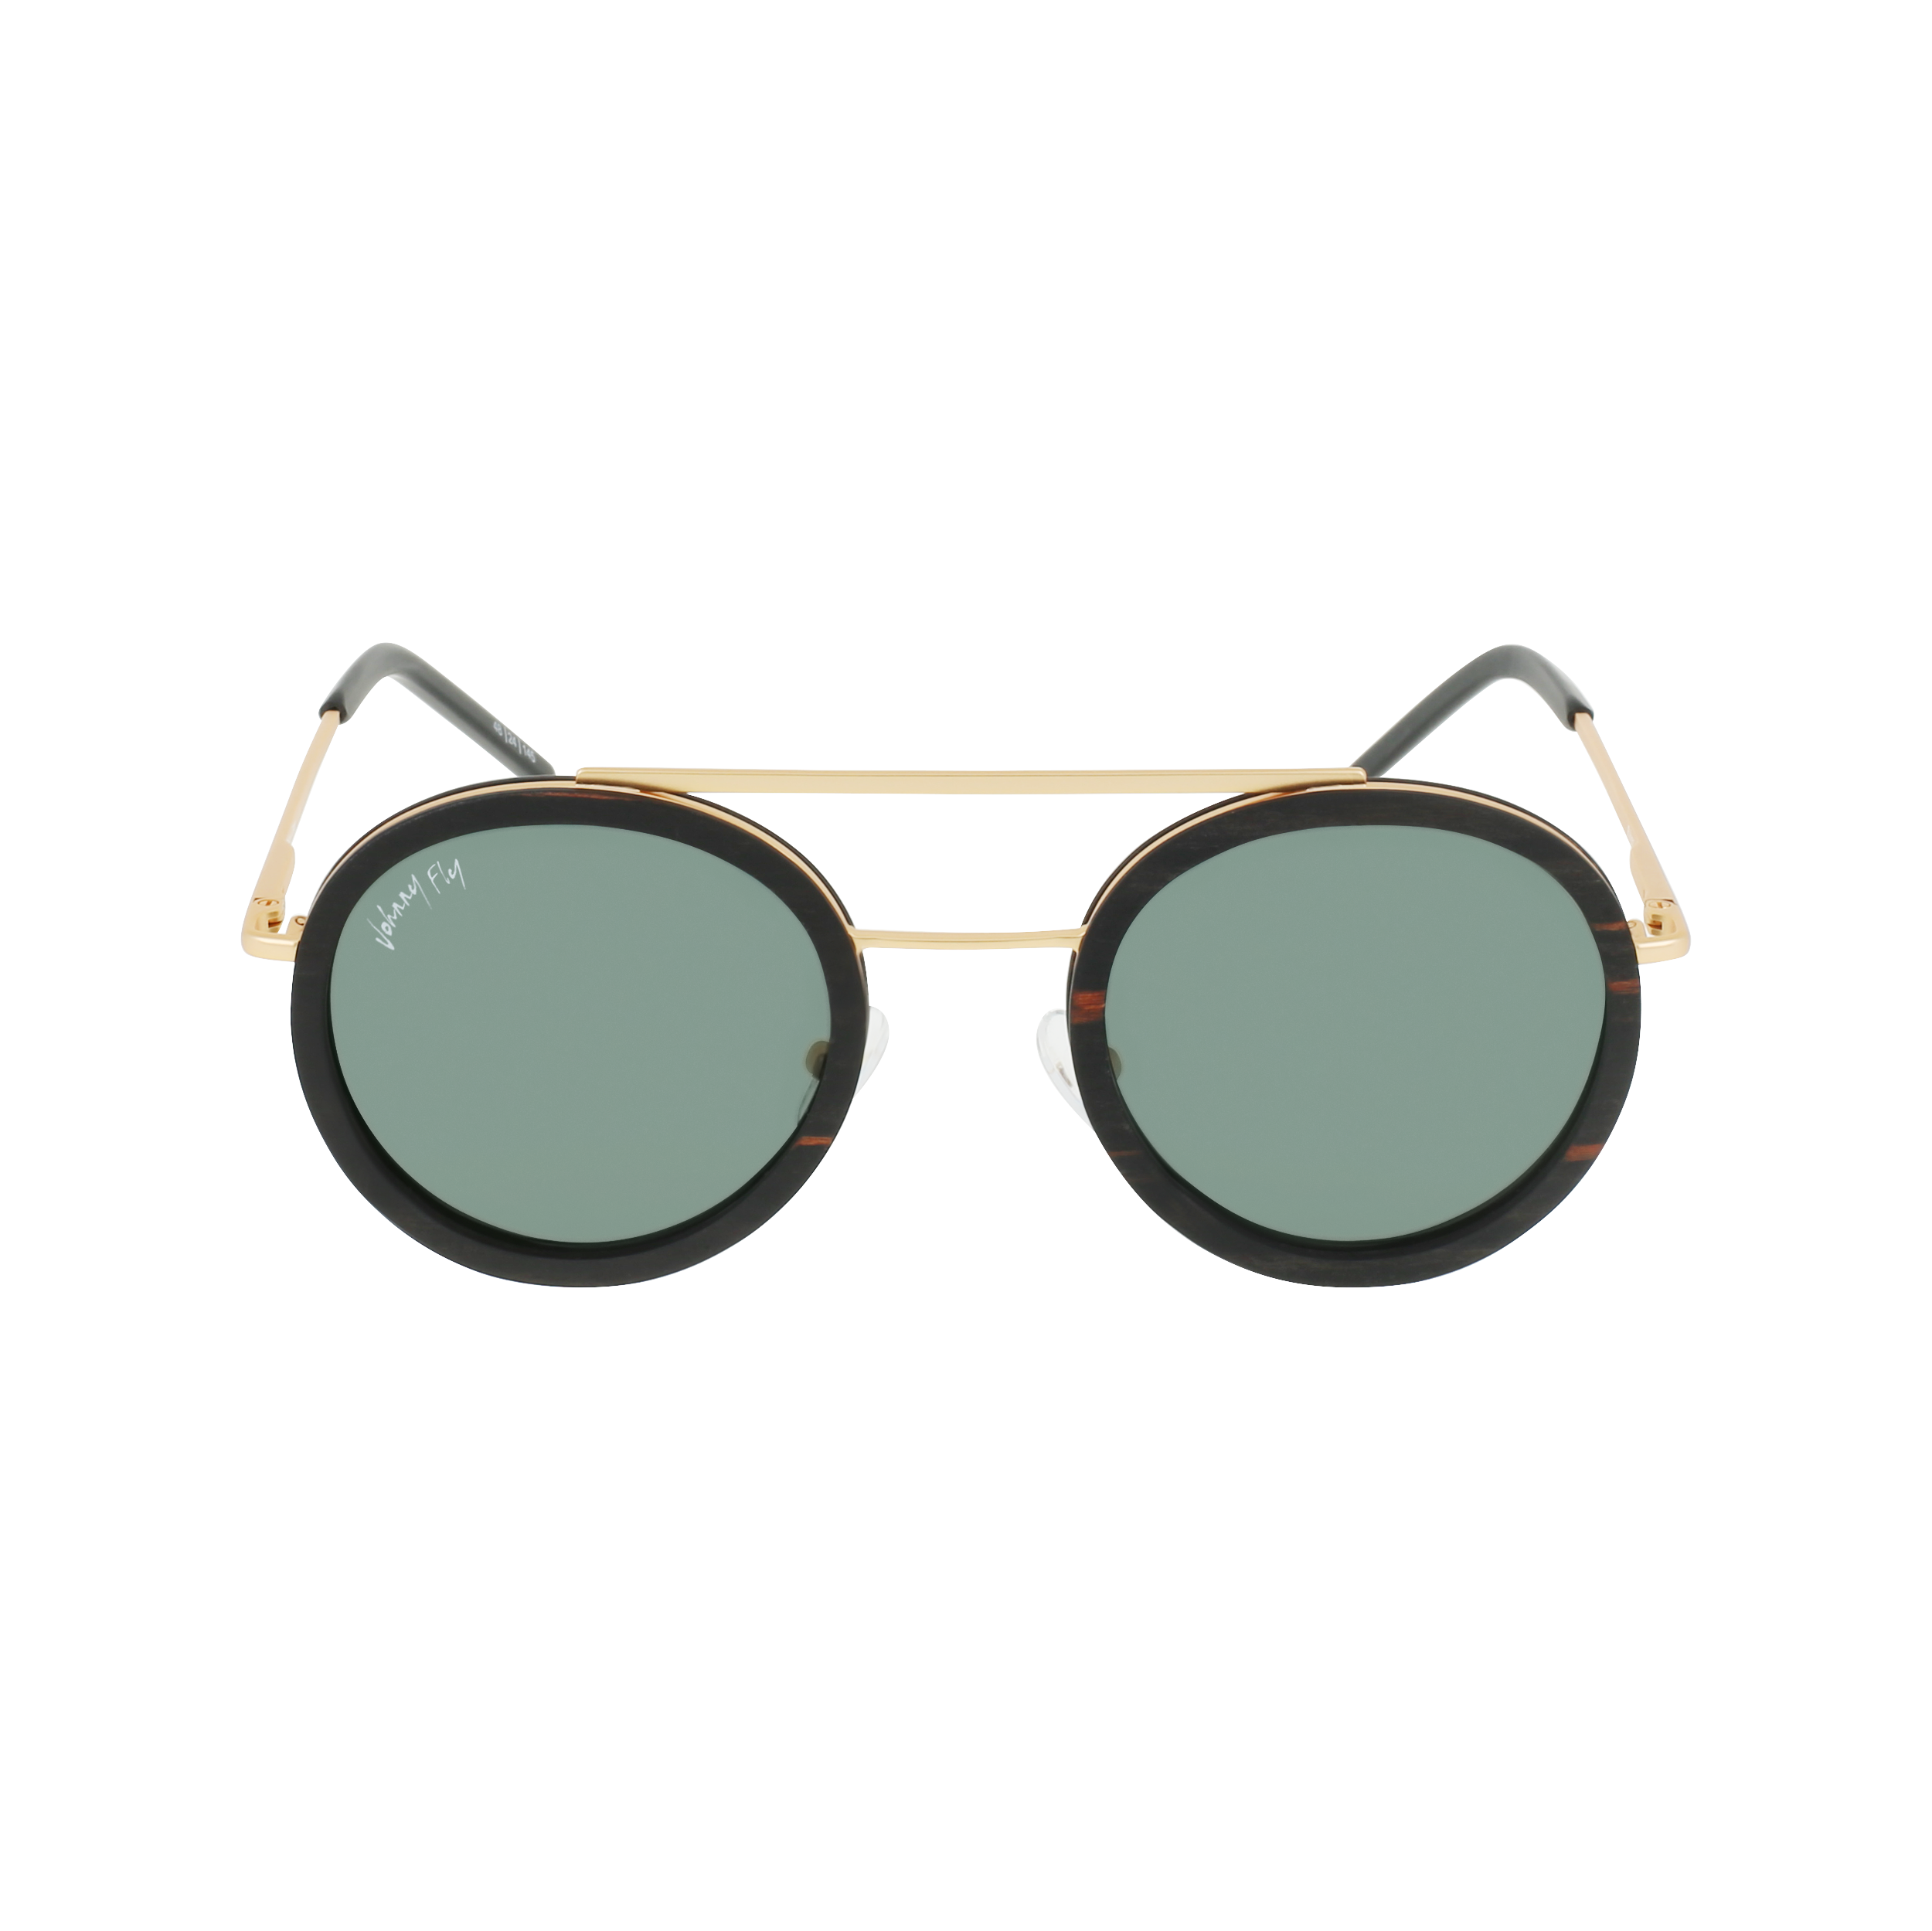 RIKER Sunglasses Frame - Gold- Johnny Fly | RIK-GLD-CR39-G15-EBN_EBN | | 